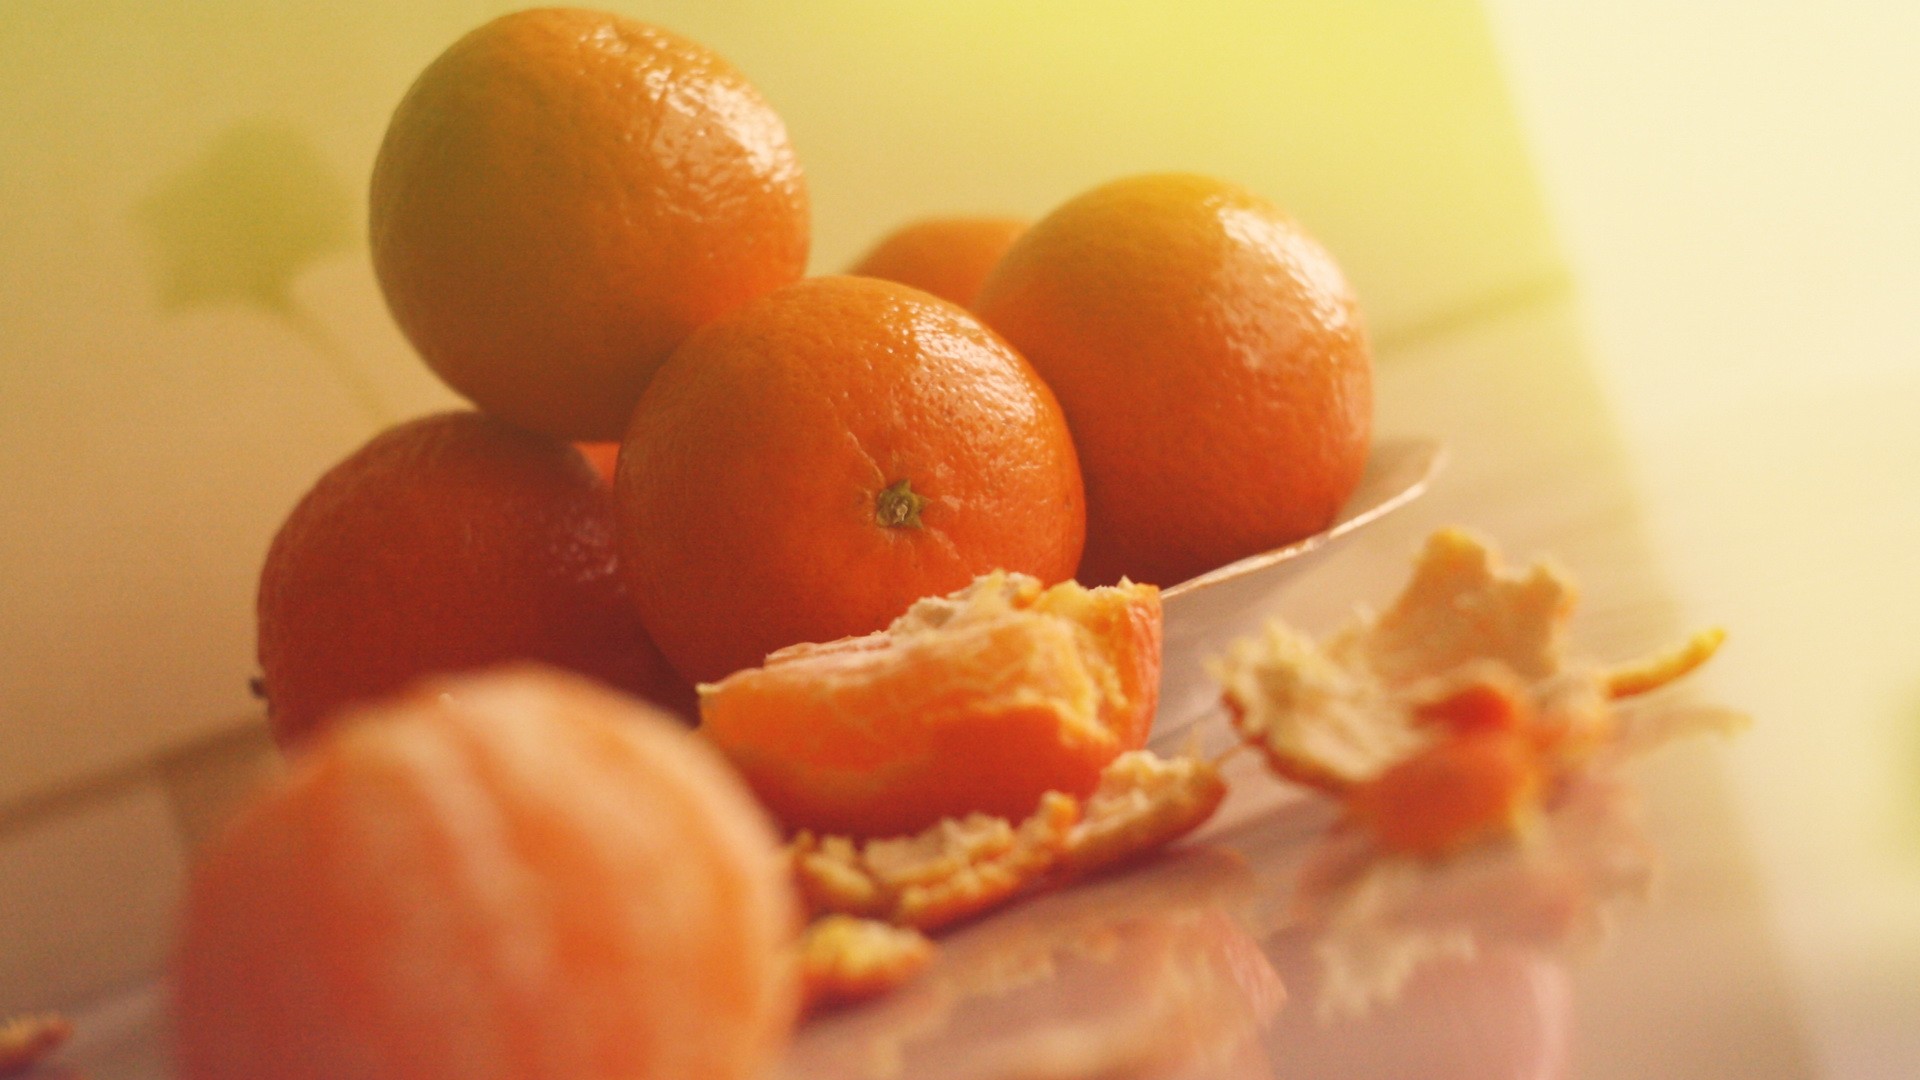 Download mobile wallpaper Fruits, Food, Fruit, Orange (Fruit) for free.